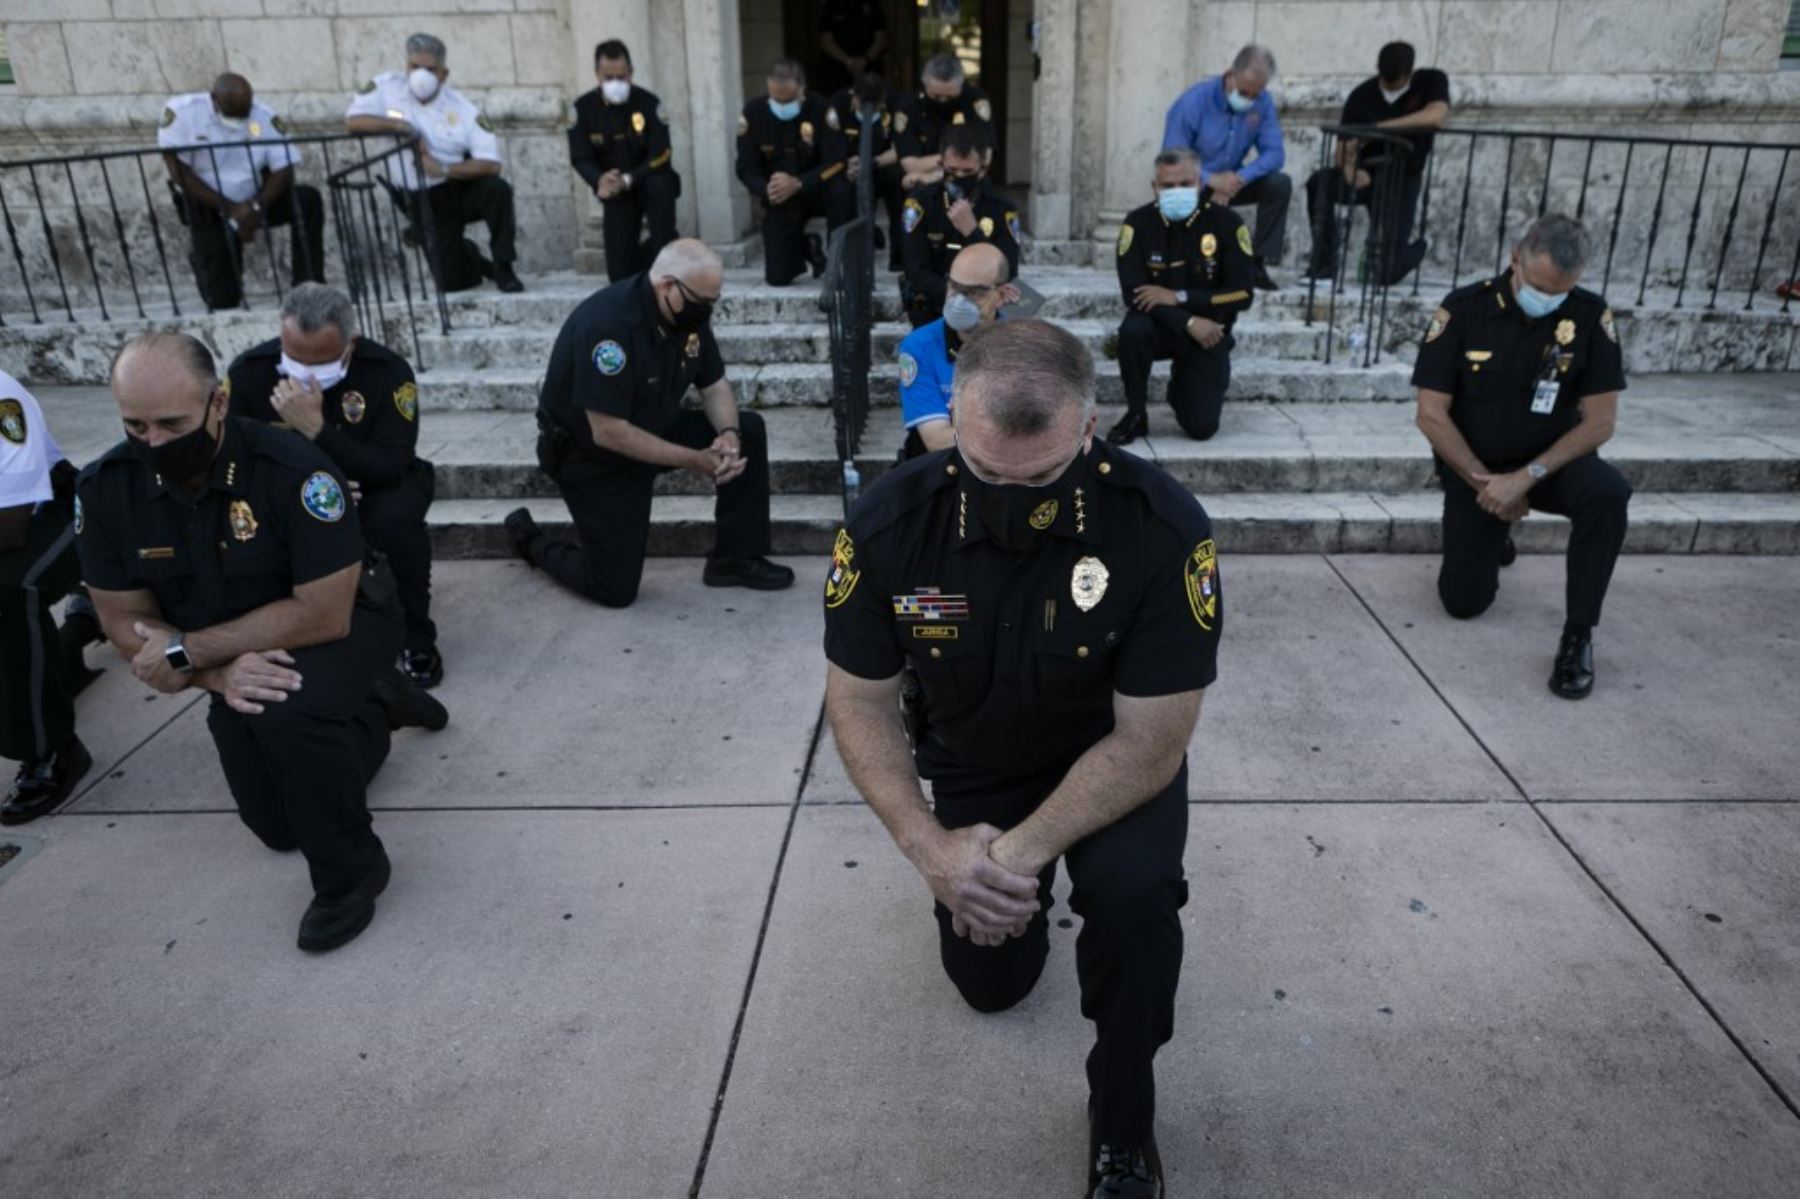 Los oficiales de policía se arrodillaron durante una manifestación en Coral Gables, Florida, el 30 de mayo de 2020 en respuesta a la reciente muerte de George Floyd. Foto: AFP